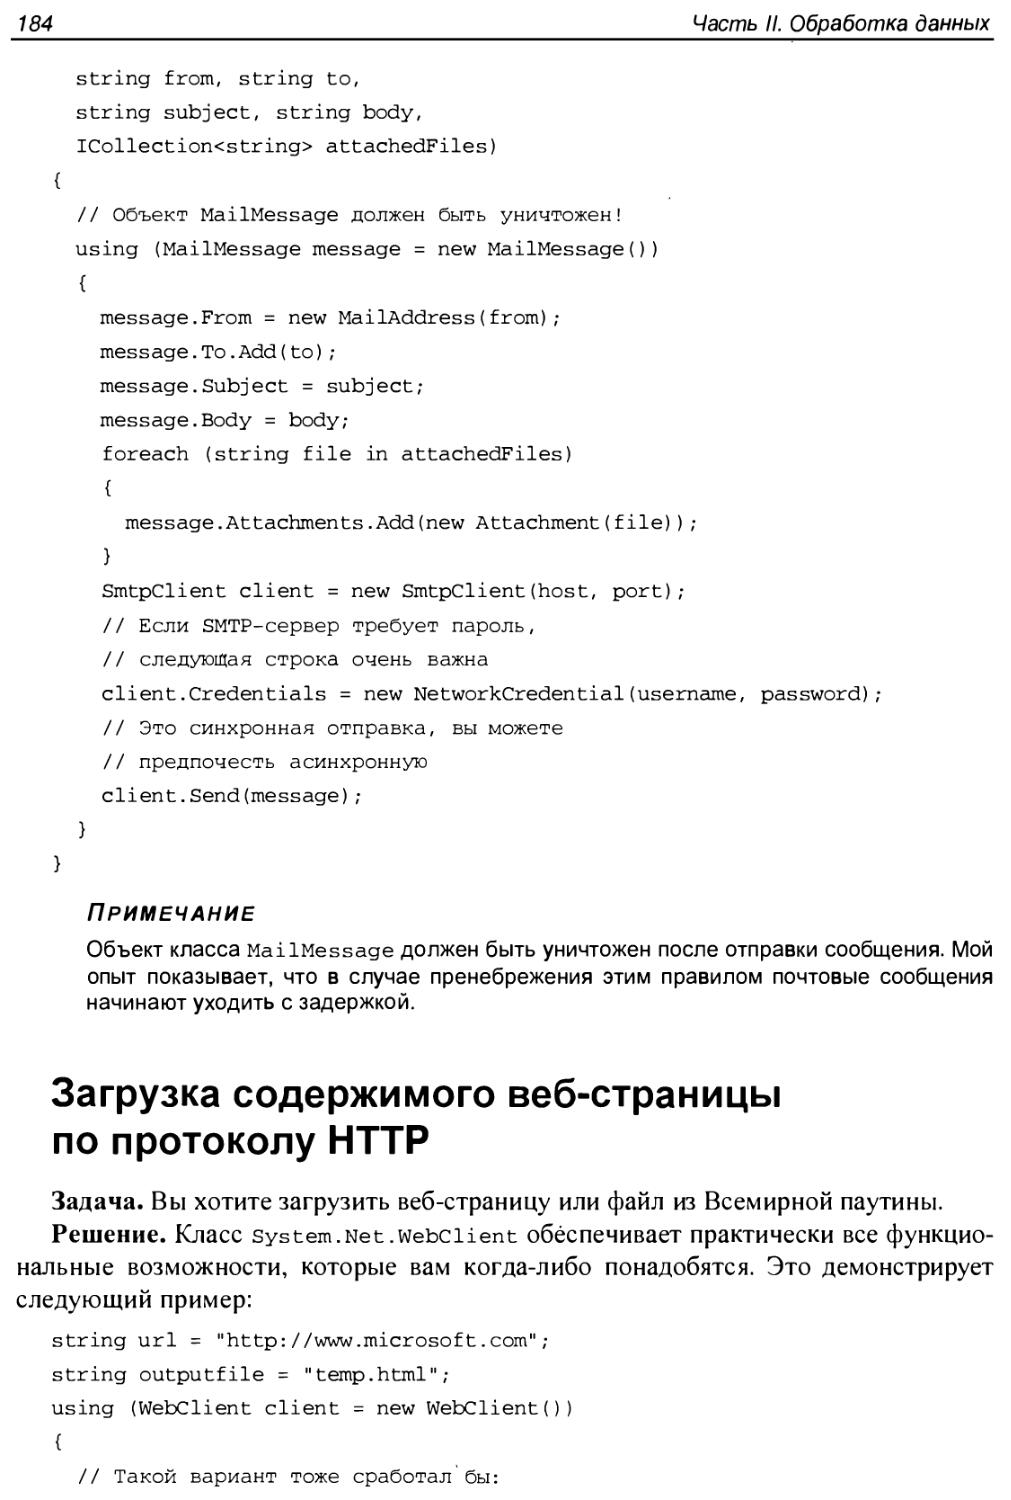 Загрузка содержимого веб-страницы по протоколу HTTP